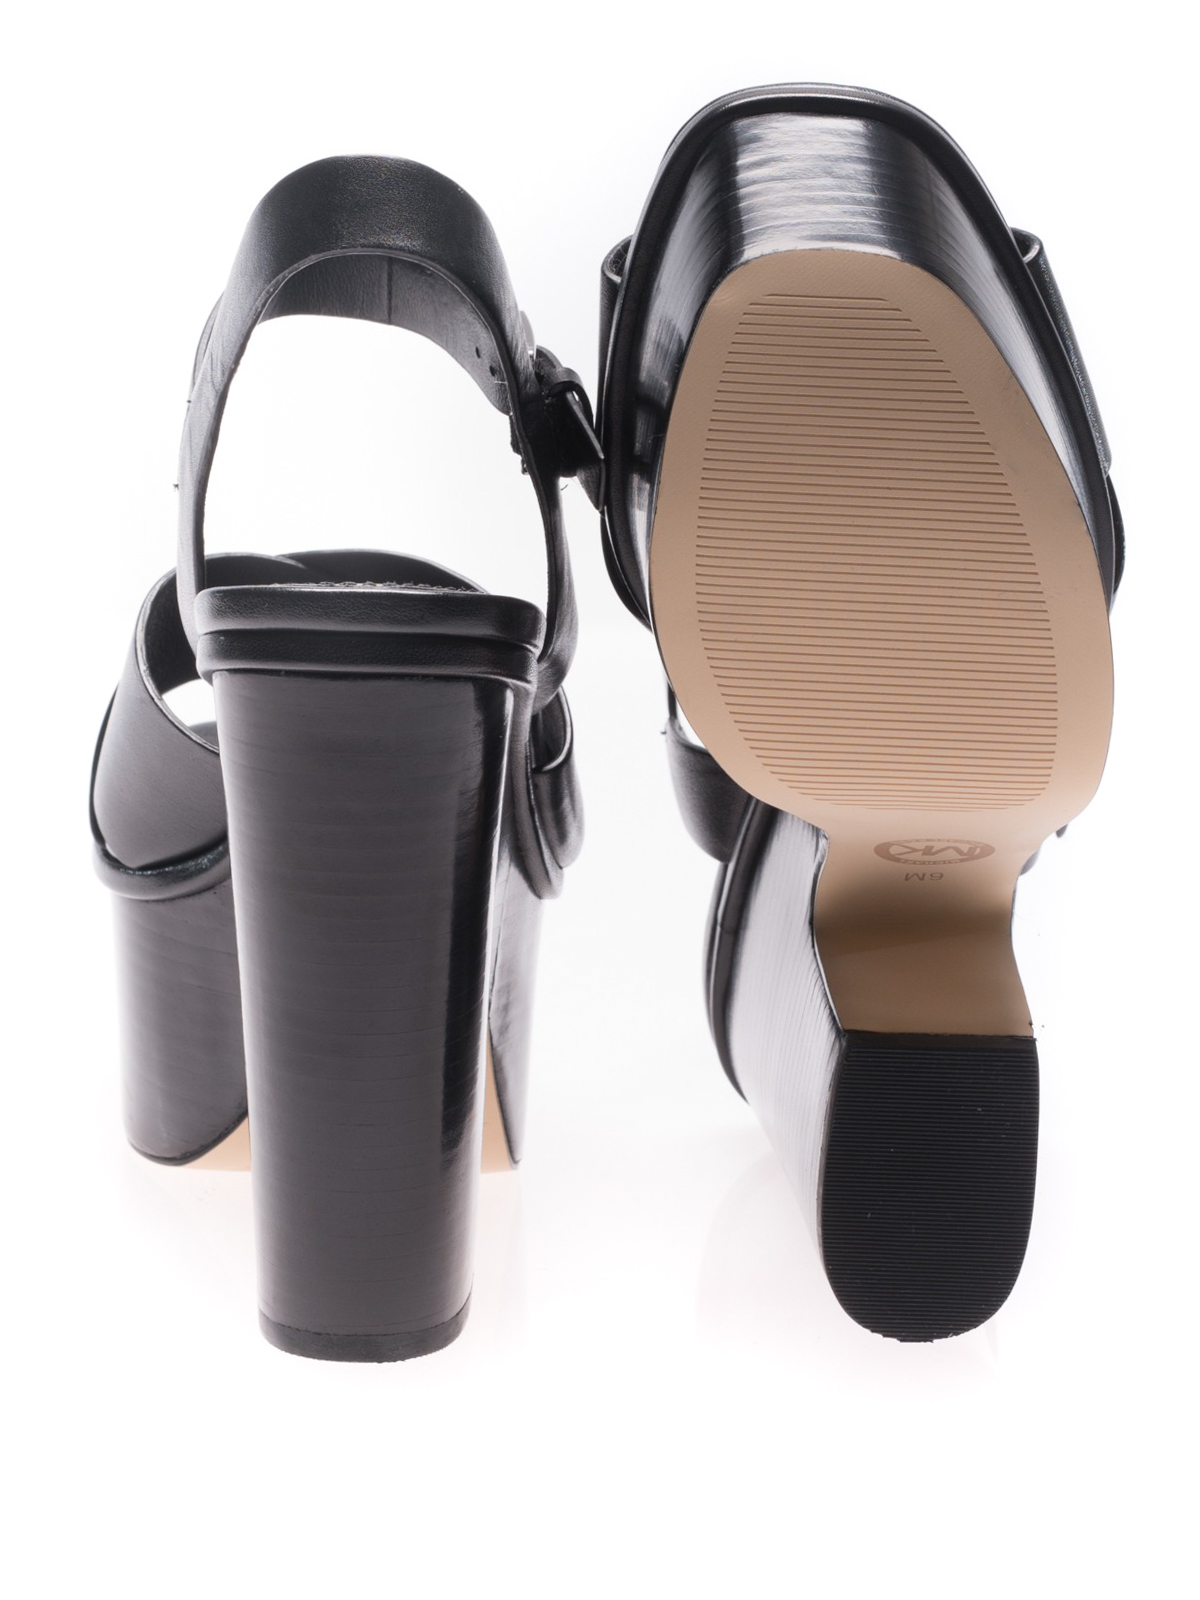 Michael Kors  Shoes  Michael Kors Diva Platform Sandal  Poshmark